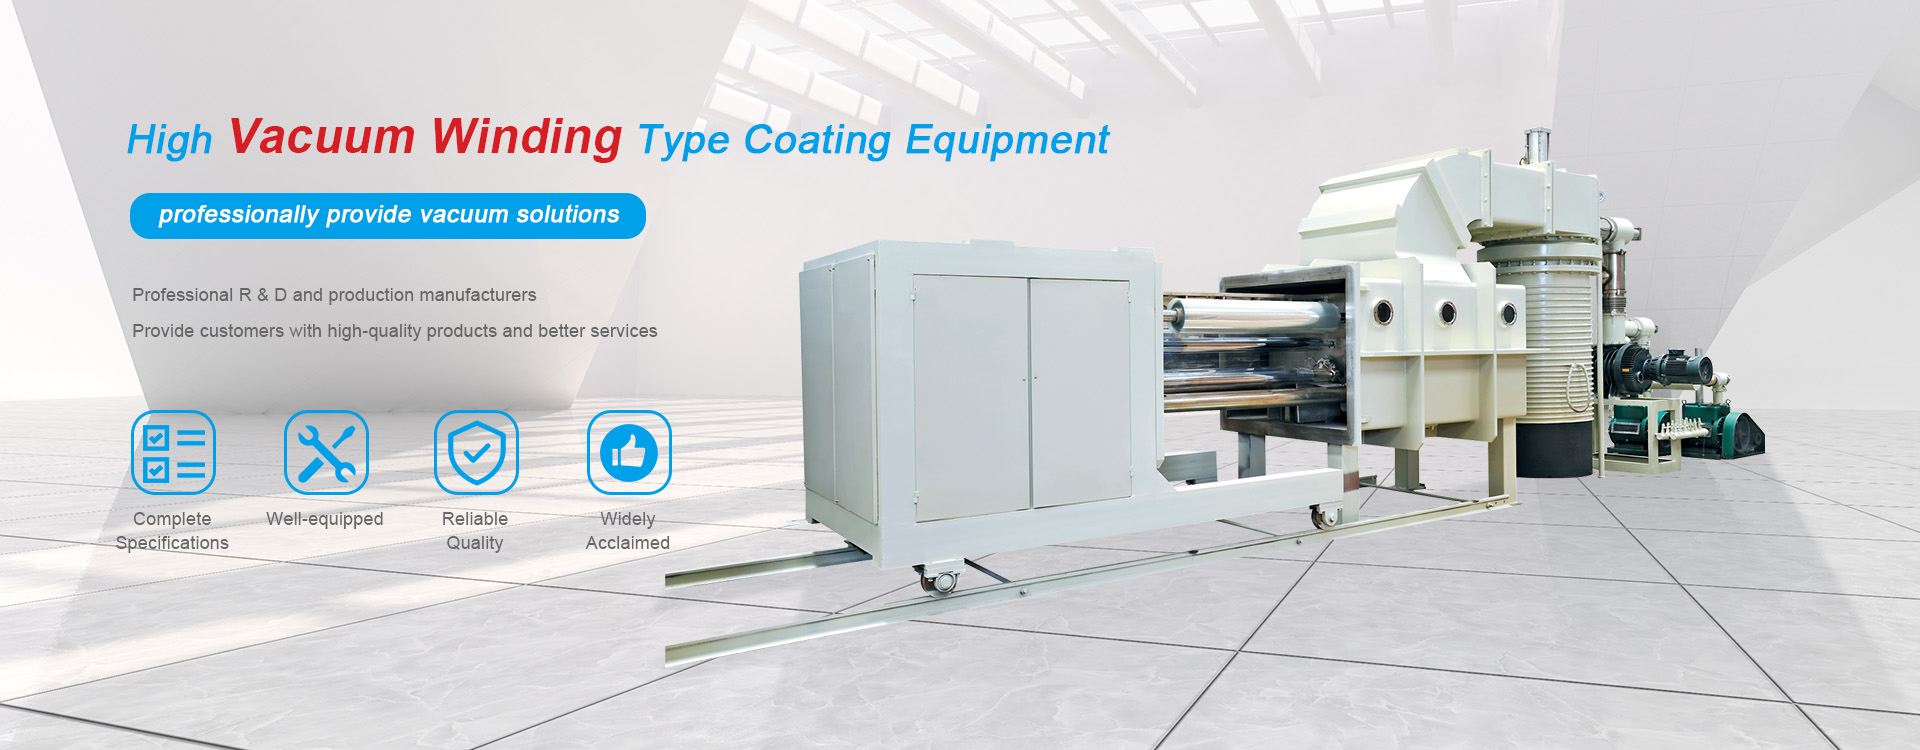 China High Vacuum Winding Type Coating Equipment